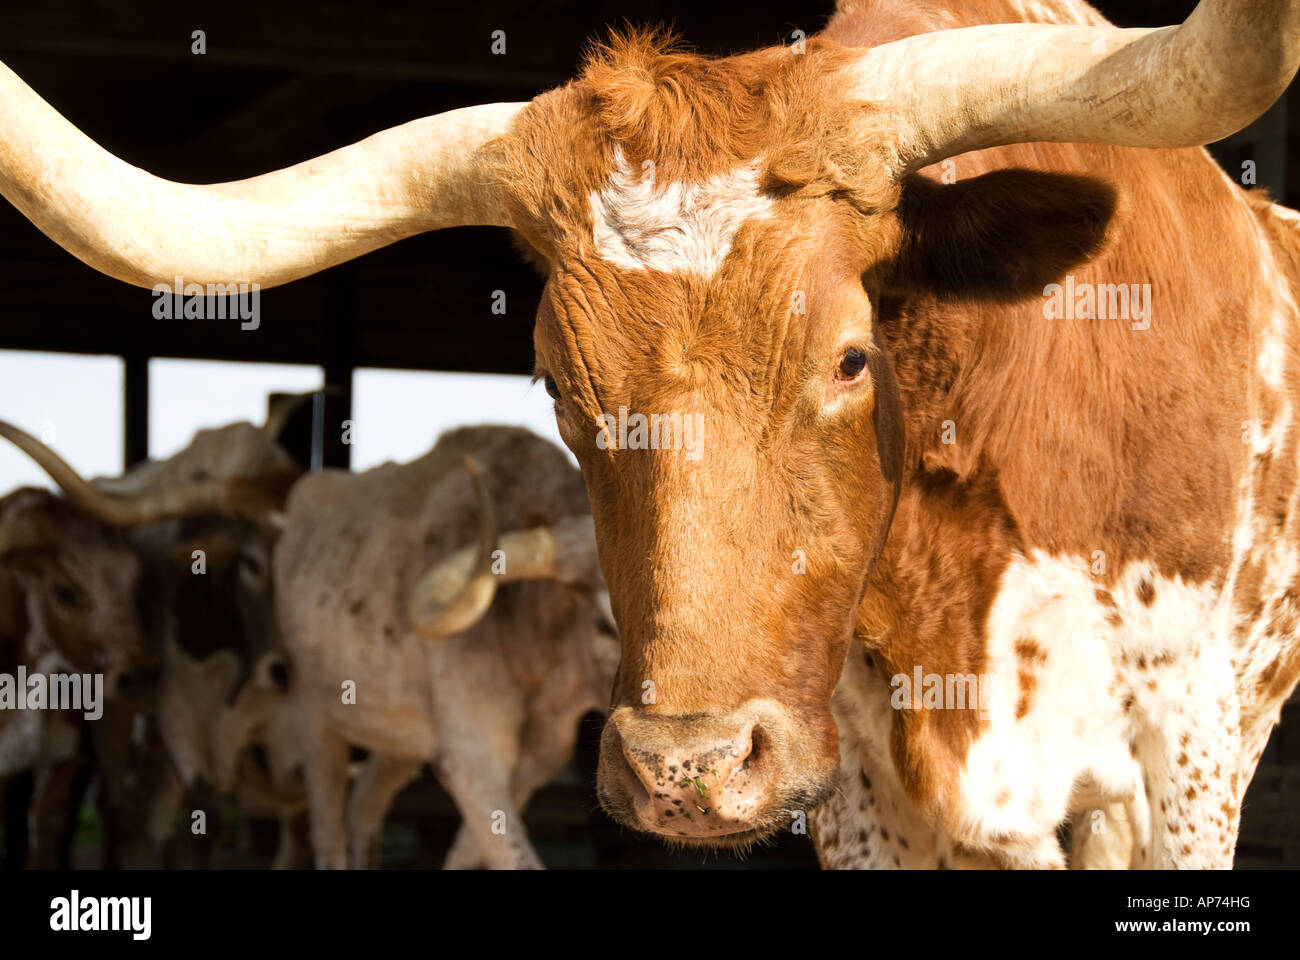 Longhorn vache dans le Fort Worth Texas Stockyards espace historique Banque D'Images